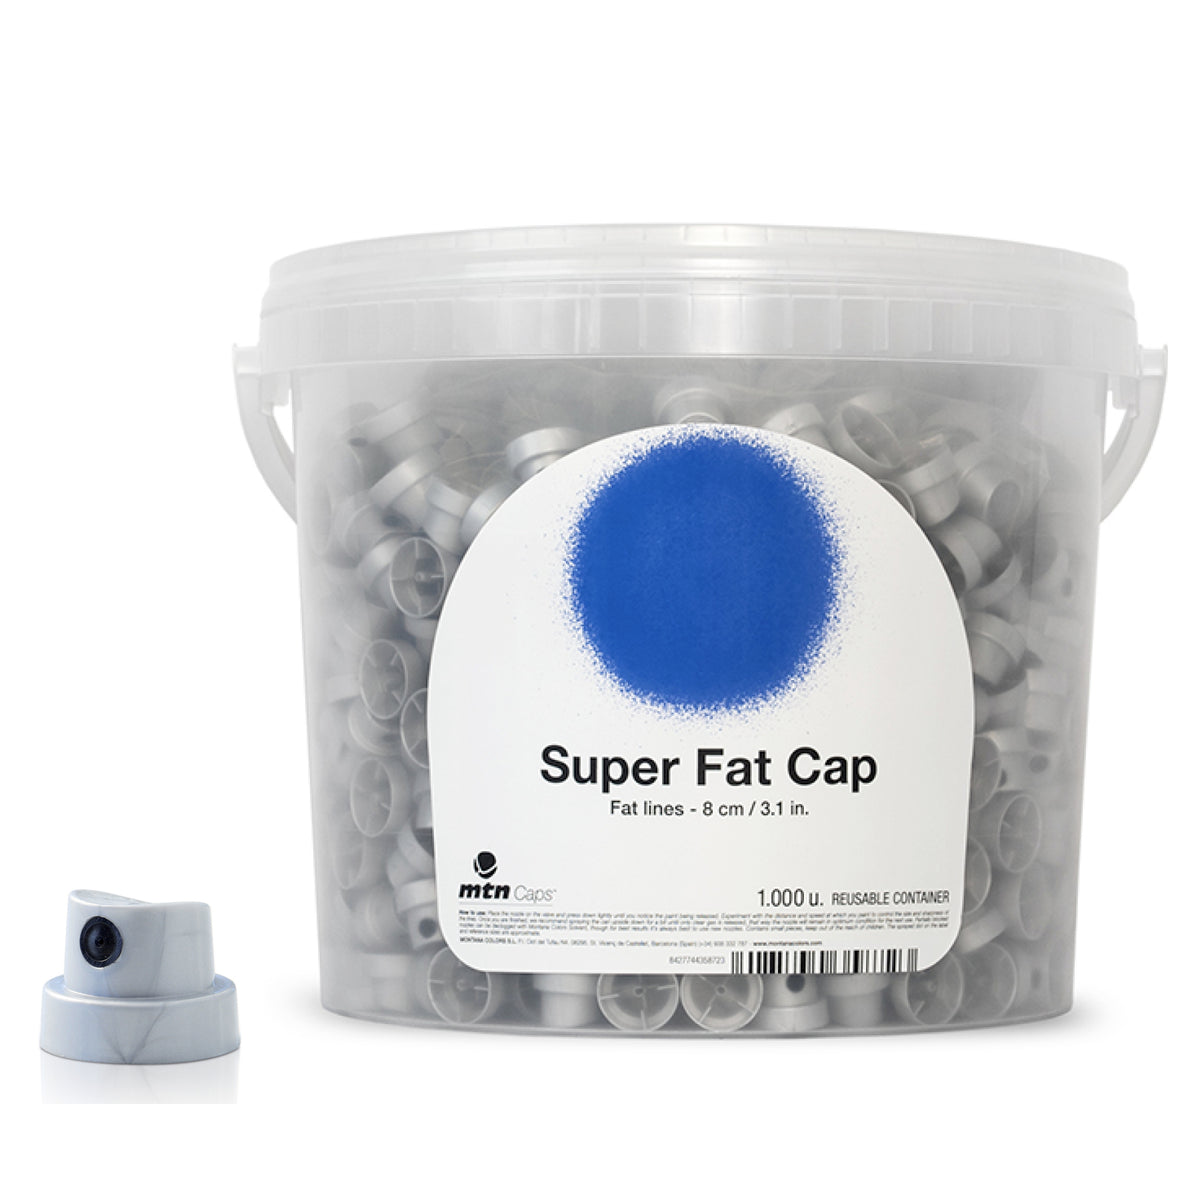 Super Fat Cap